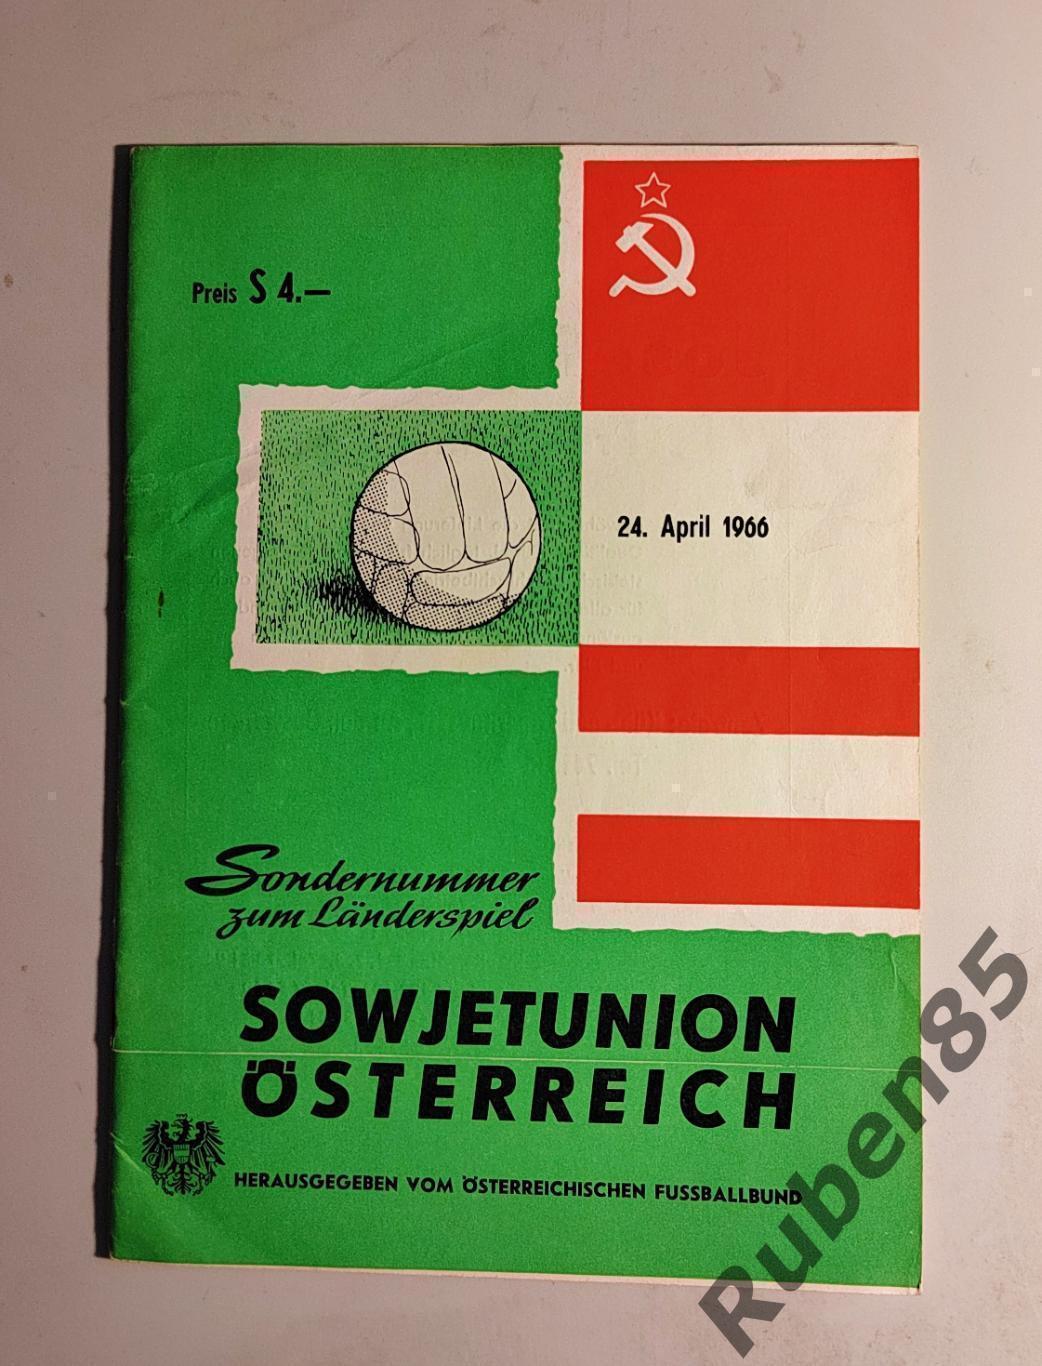 ЦЕНА НА СЕГОДНЯ • Футбол. Программа Австрия - СССР 1966